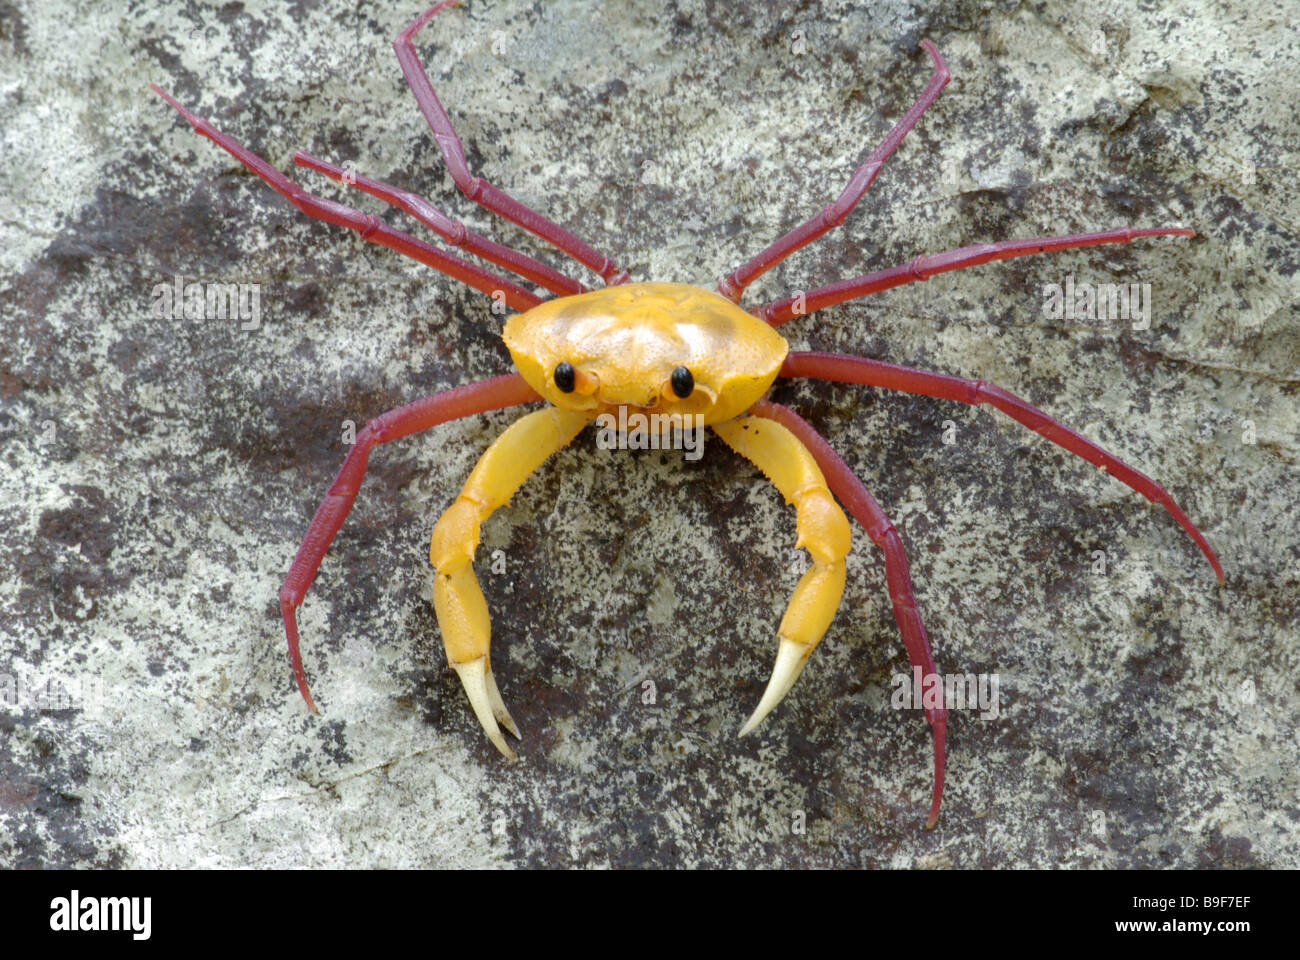 "Une araignée crabe coloré' (Madagapotamon humberti) sur un rocher dans la réserve spéciale d'Ankarana, Madagascar. Banque D'Images